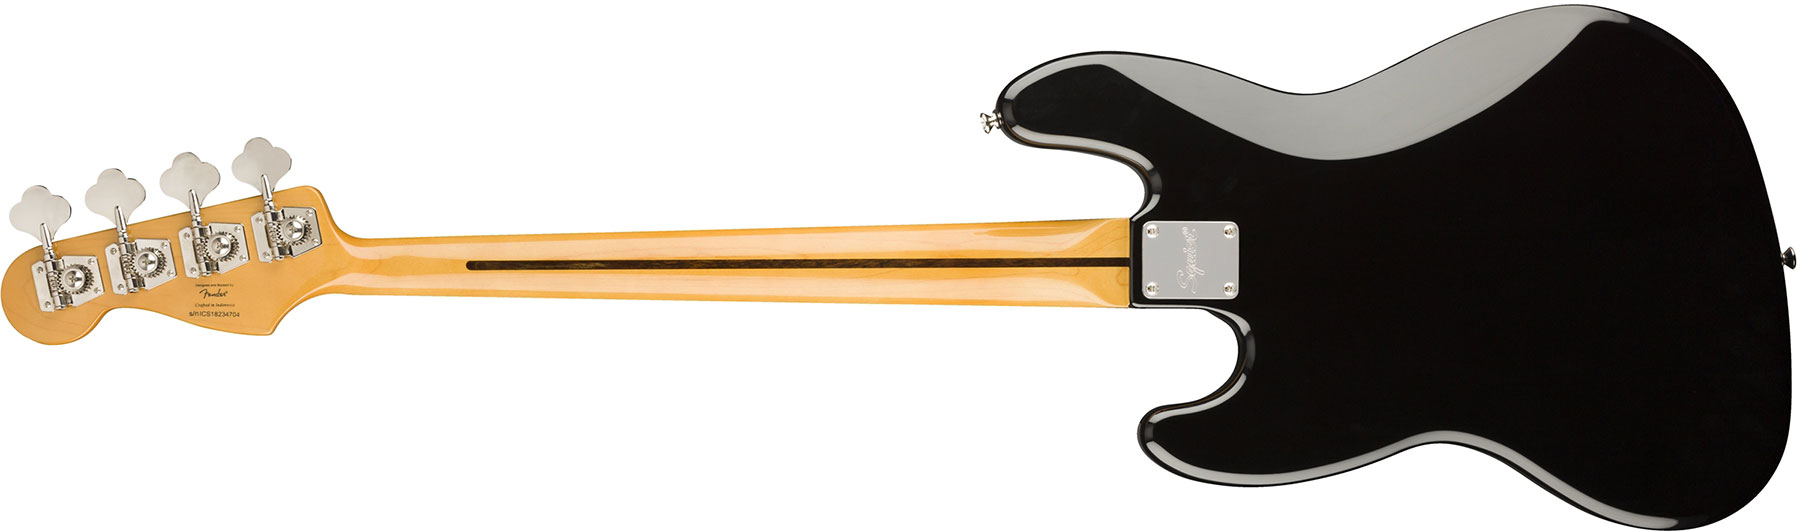 Squier Jazz Bass Classic Vibe 60s Fretless 2019 Lau - 3-color Sunburst - Bajo eléctrico de cuerpo sólido - Variation 1